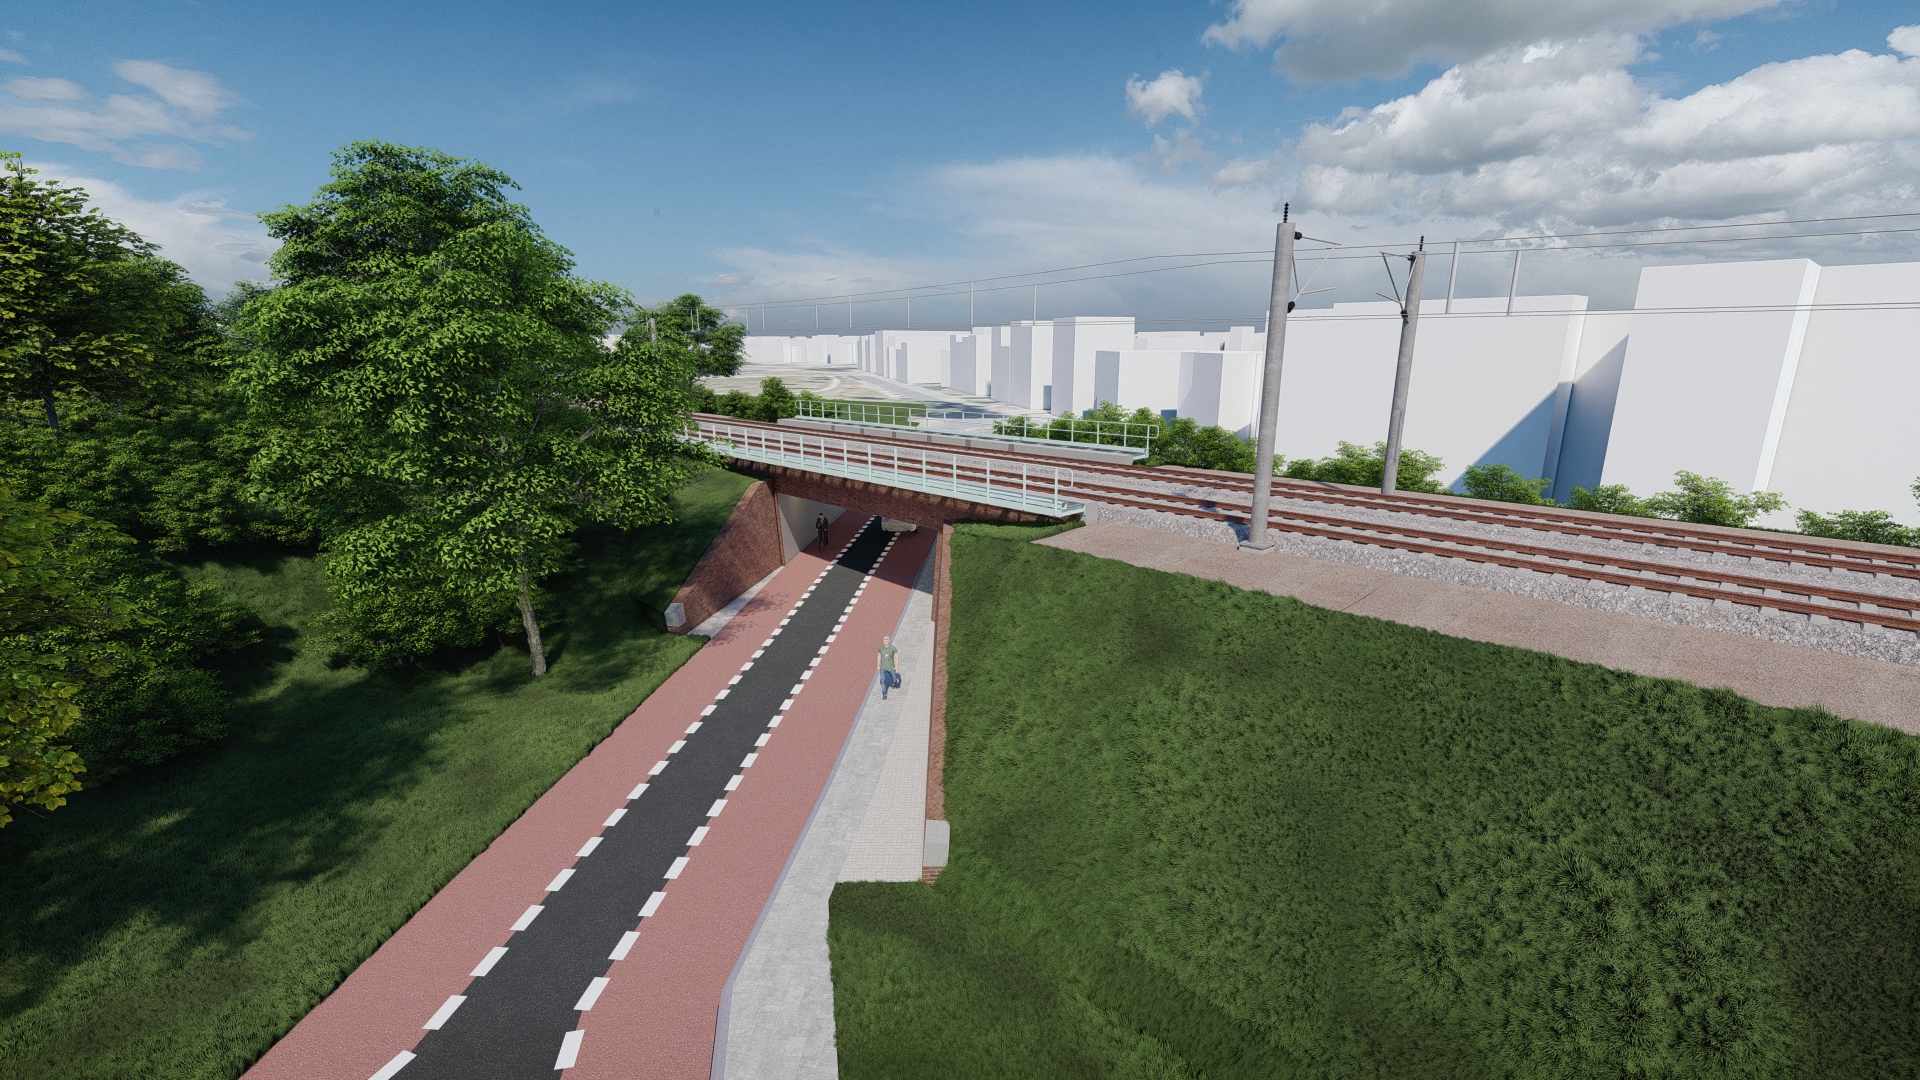 Viaduct de Kissel in Heerlen